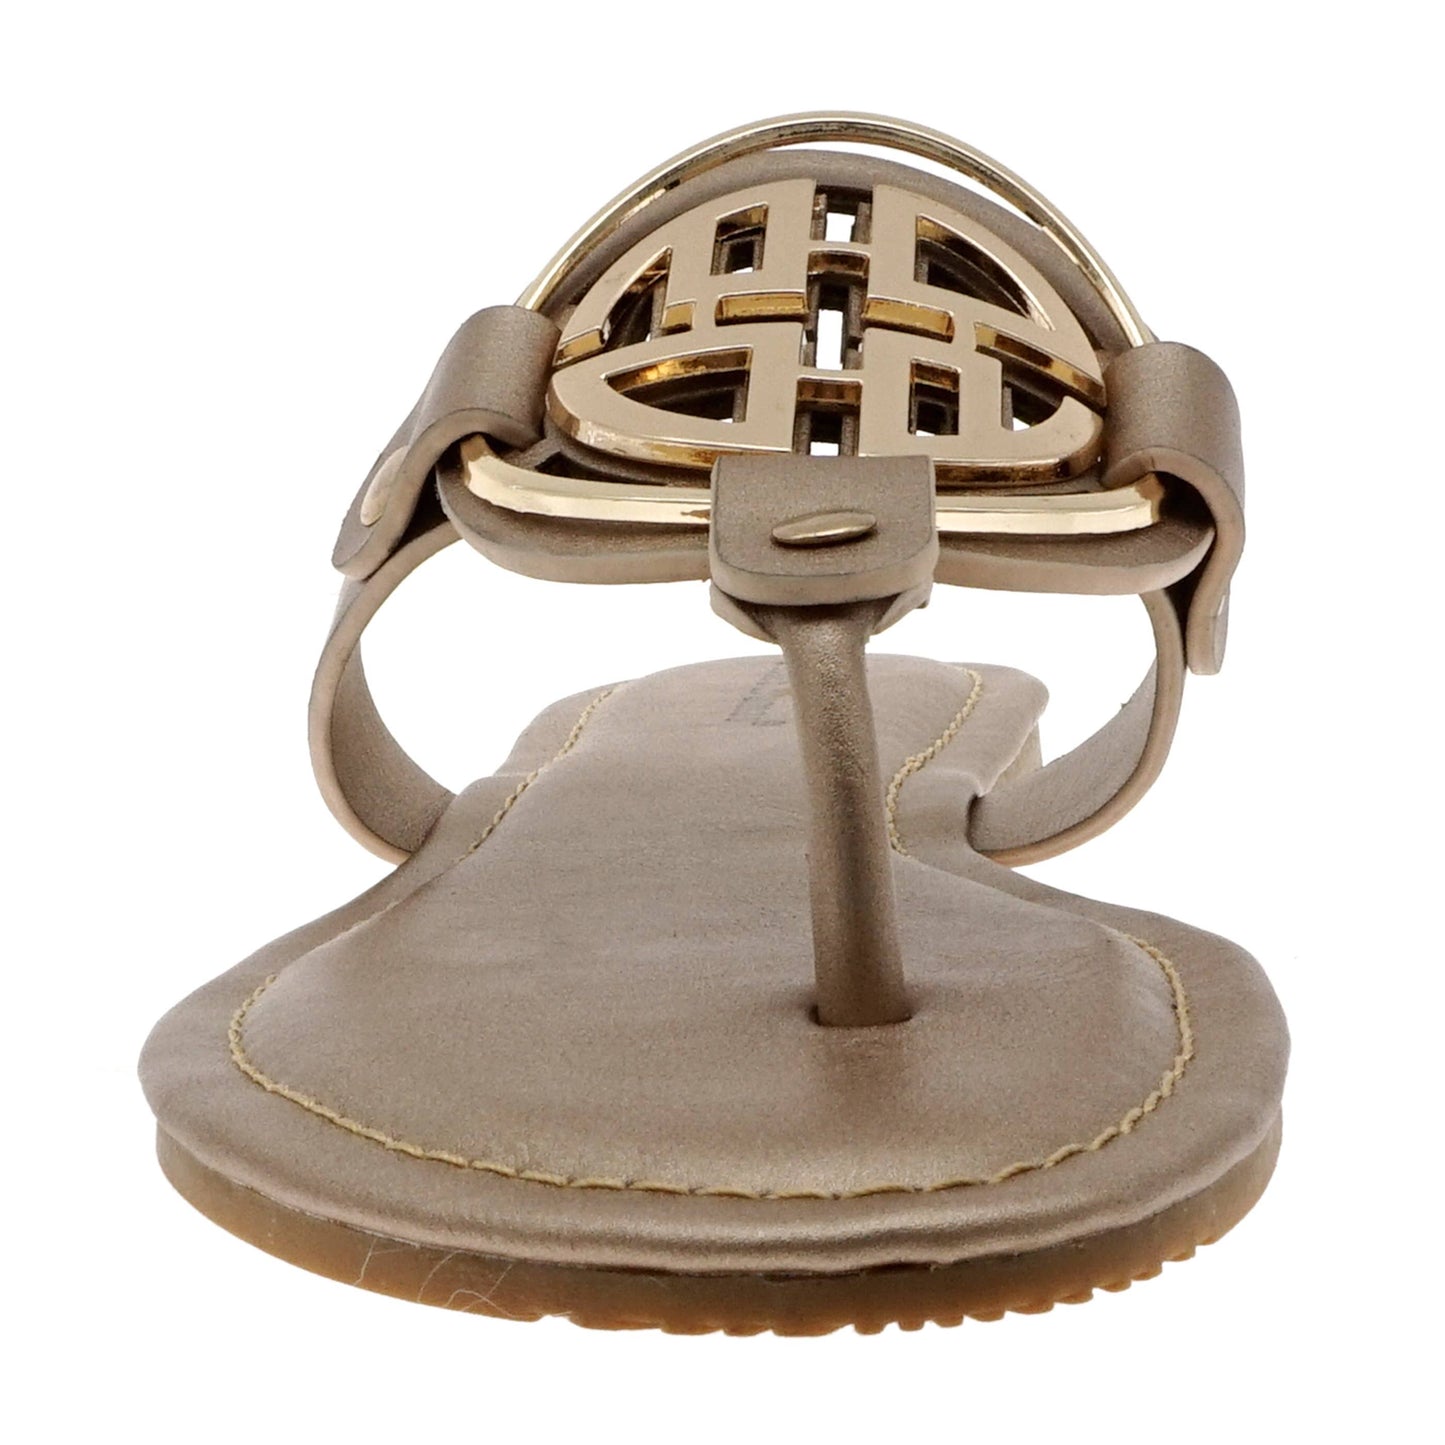 Rose-gold Emblem Sandals